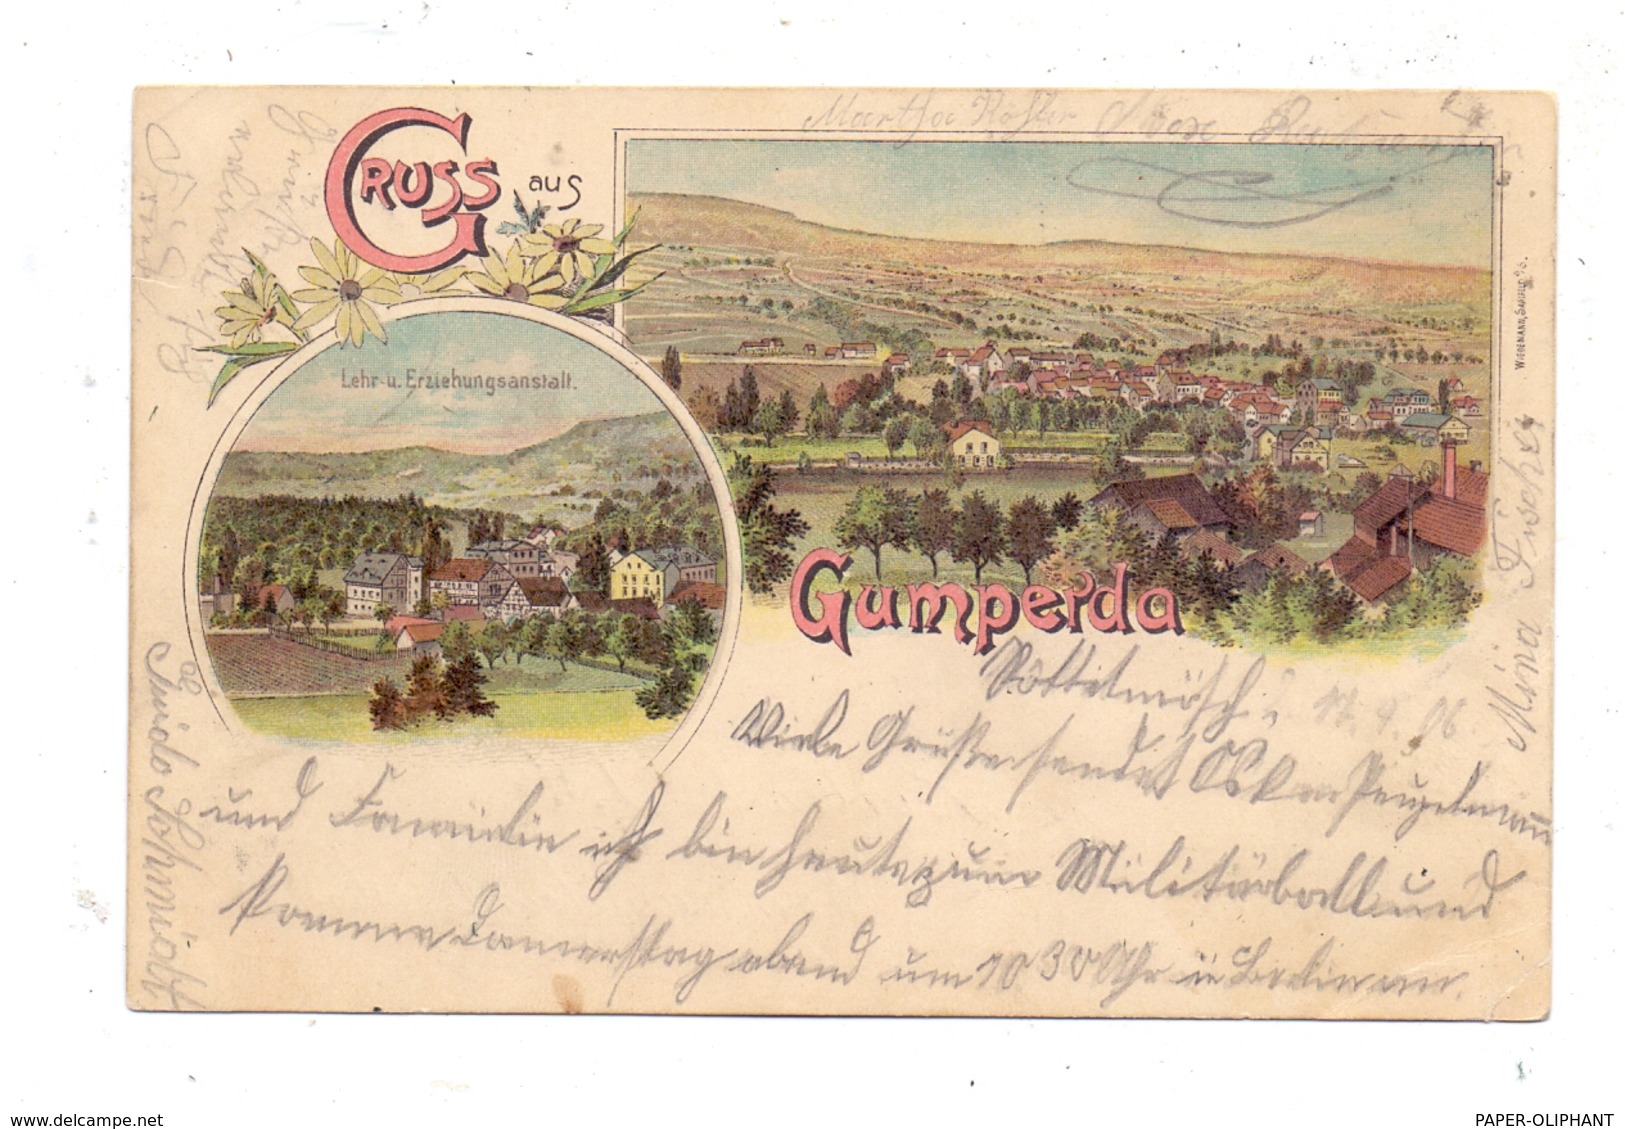 0-6901 GUMPERDA, Lithographie, Lehr- Und Erziehungsanstalt, Gesamtansicht - Eisenberg